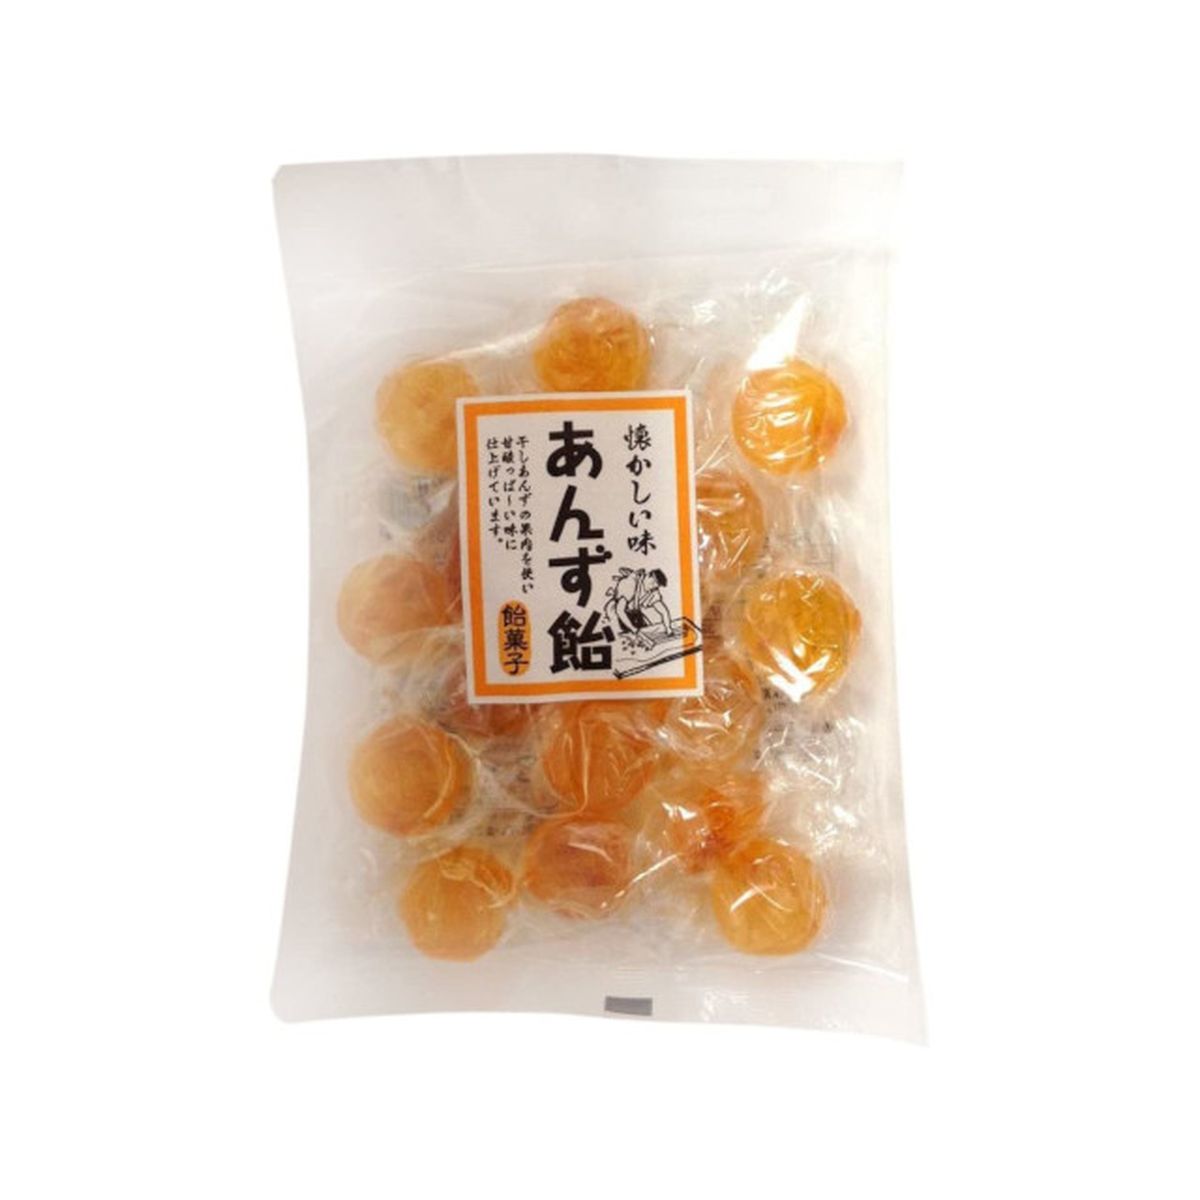 【12個入り】中島製菓 懐かしい味 あんず飴 130g